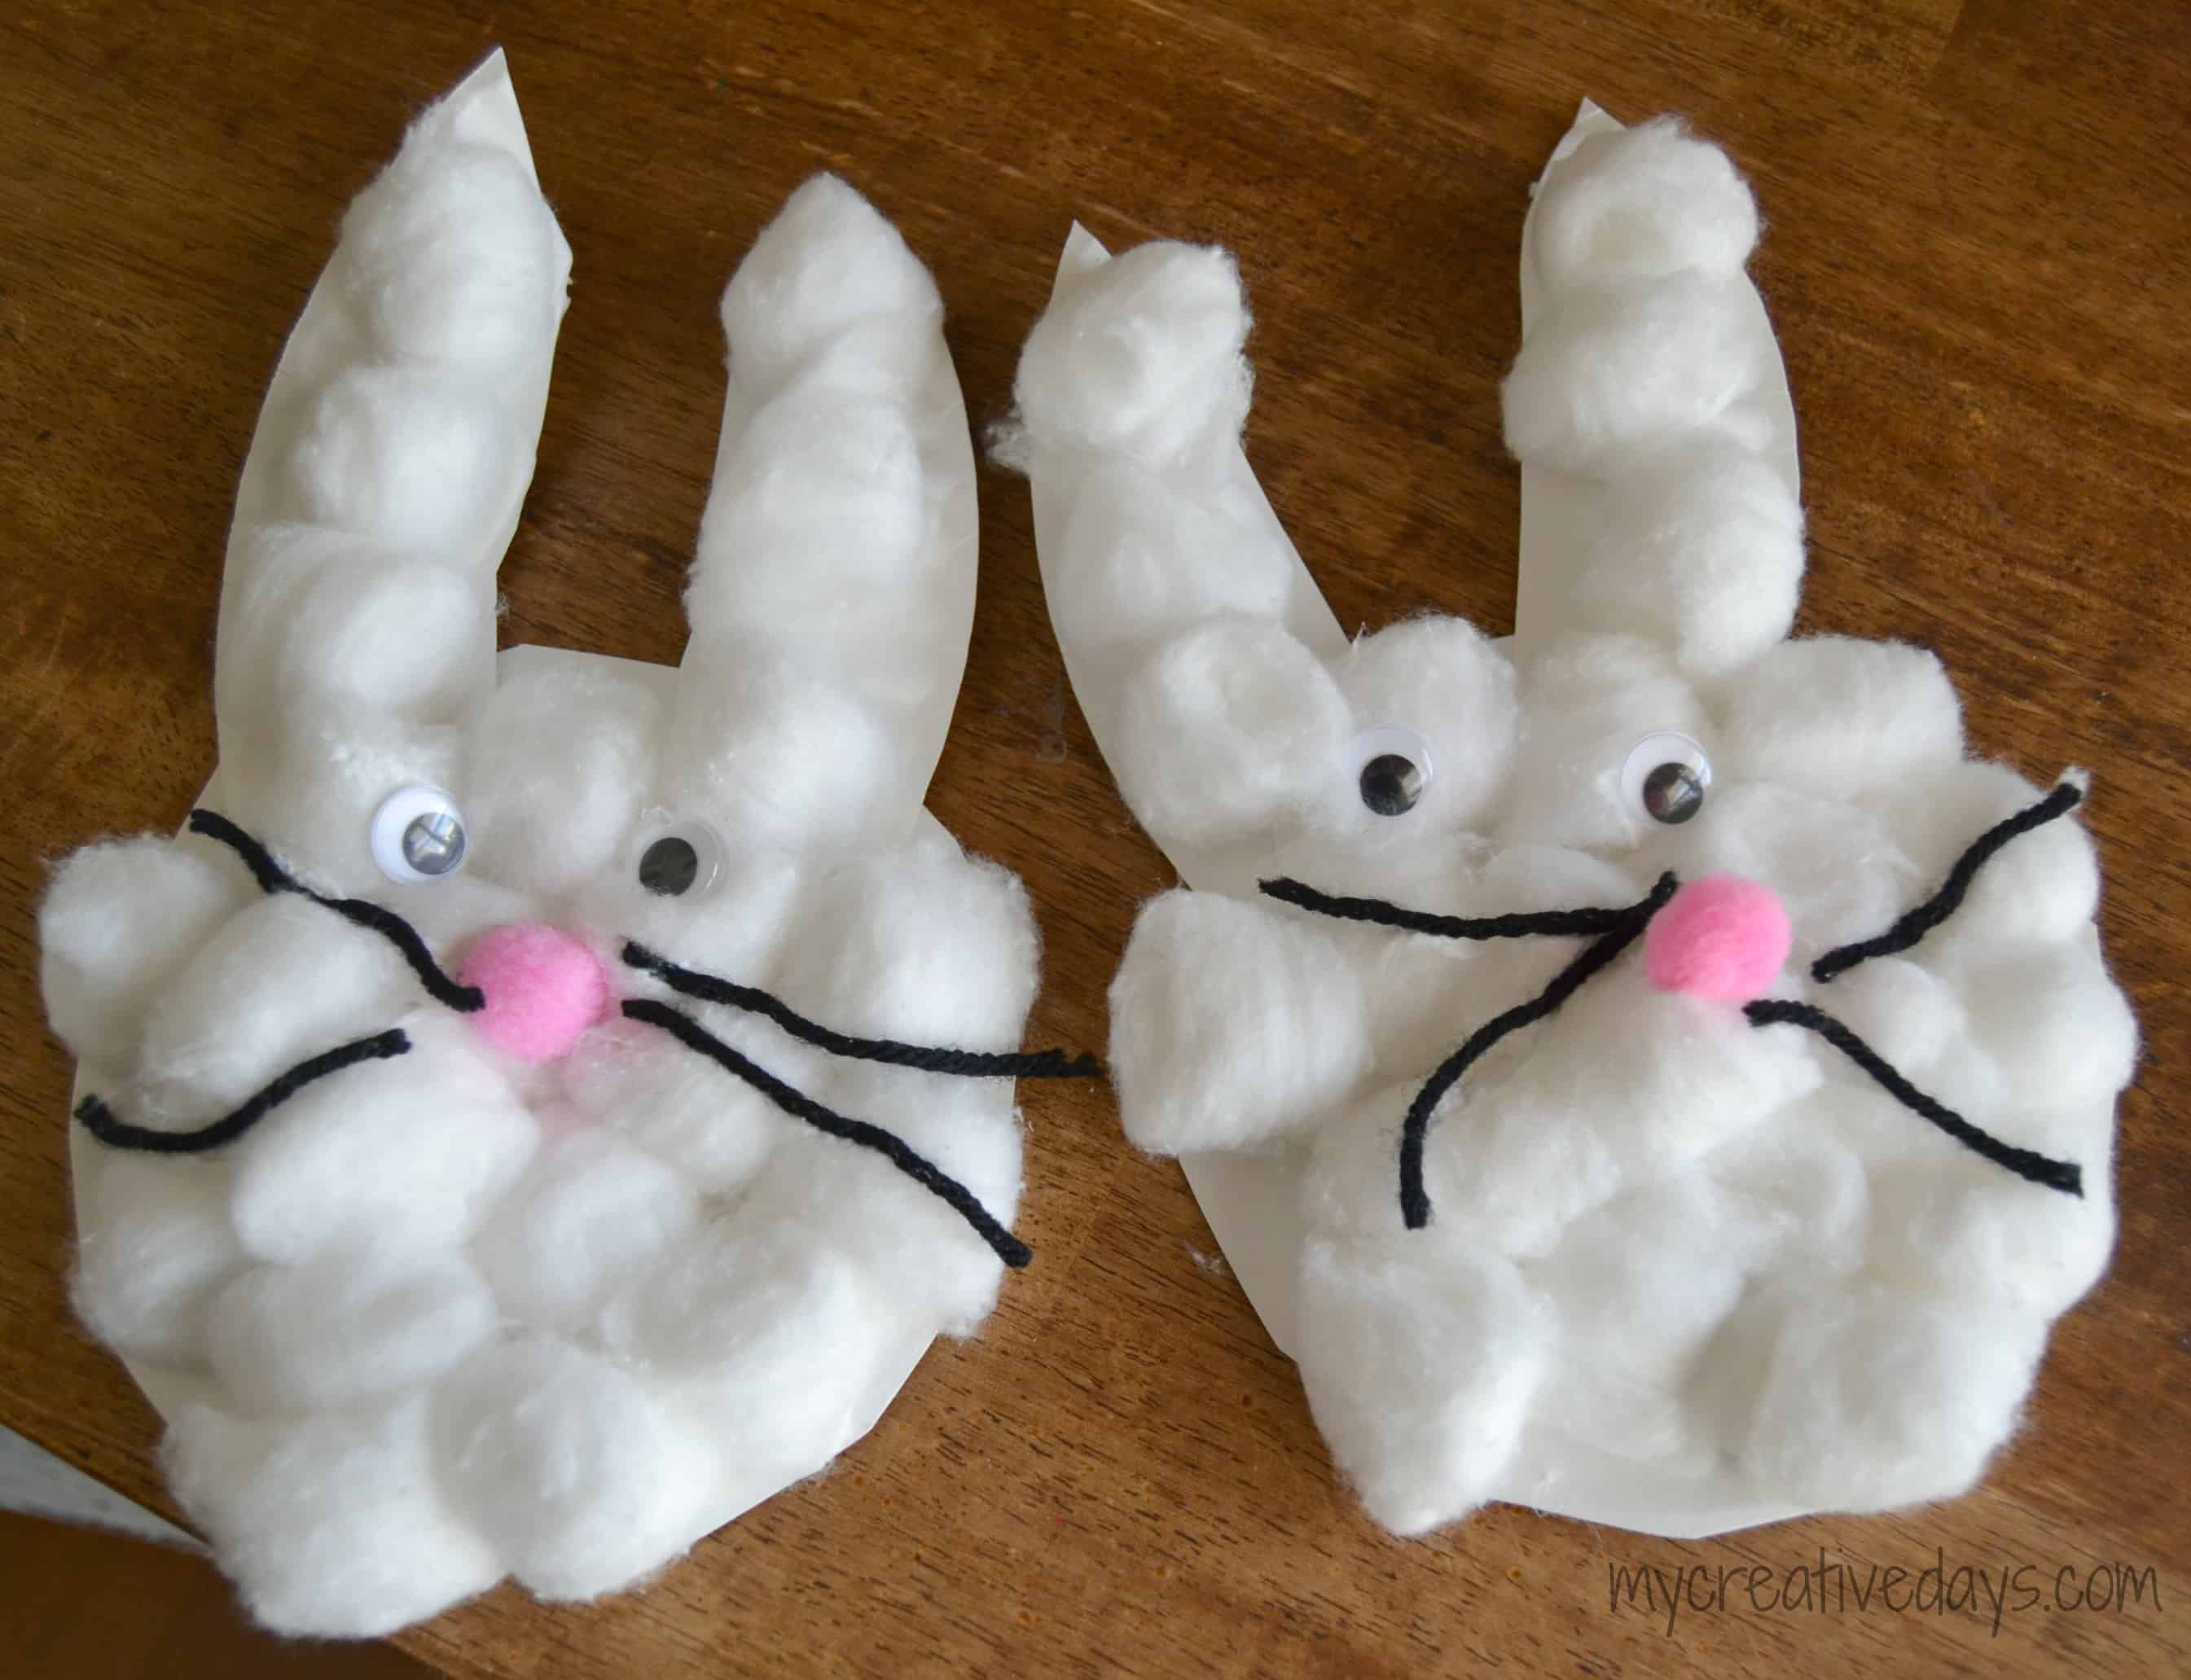 Cotton ball bunnies